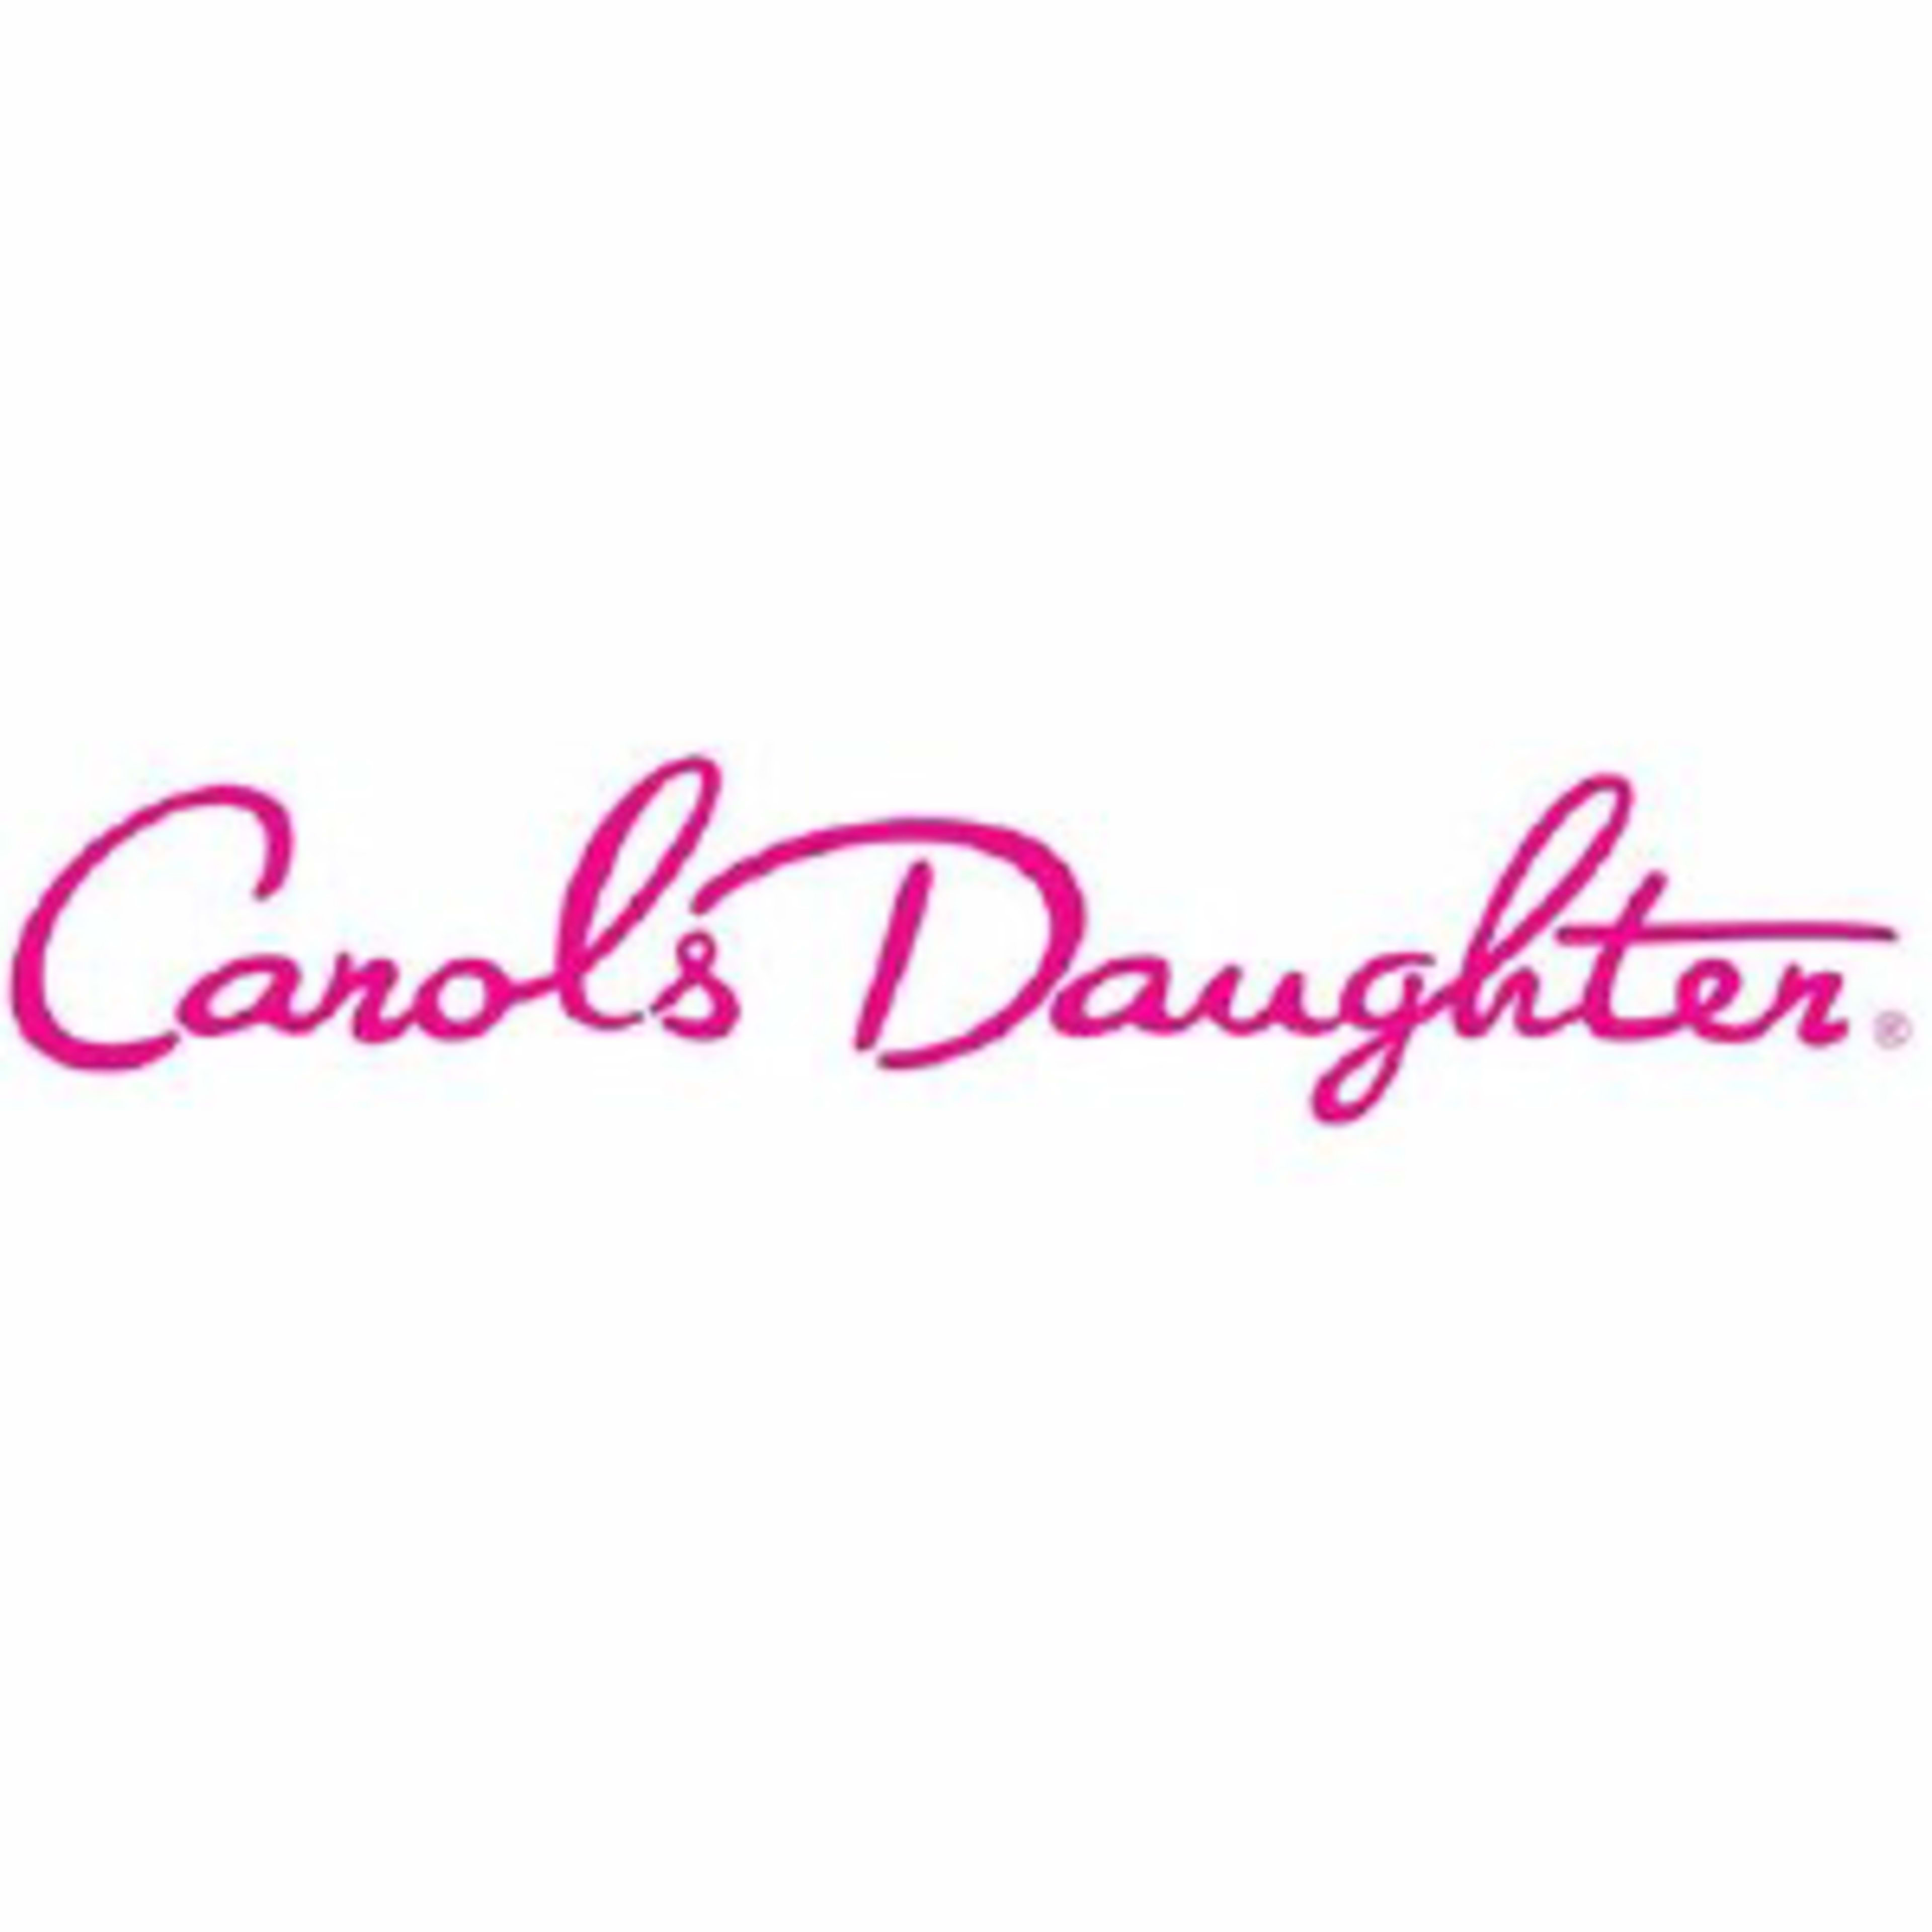 Carol's DaughterCode